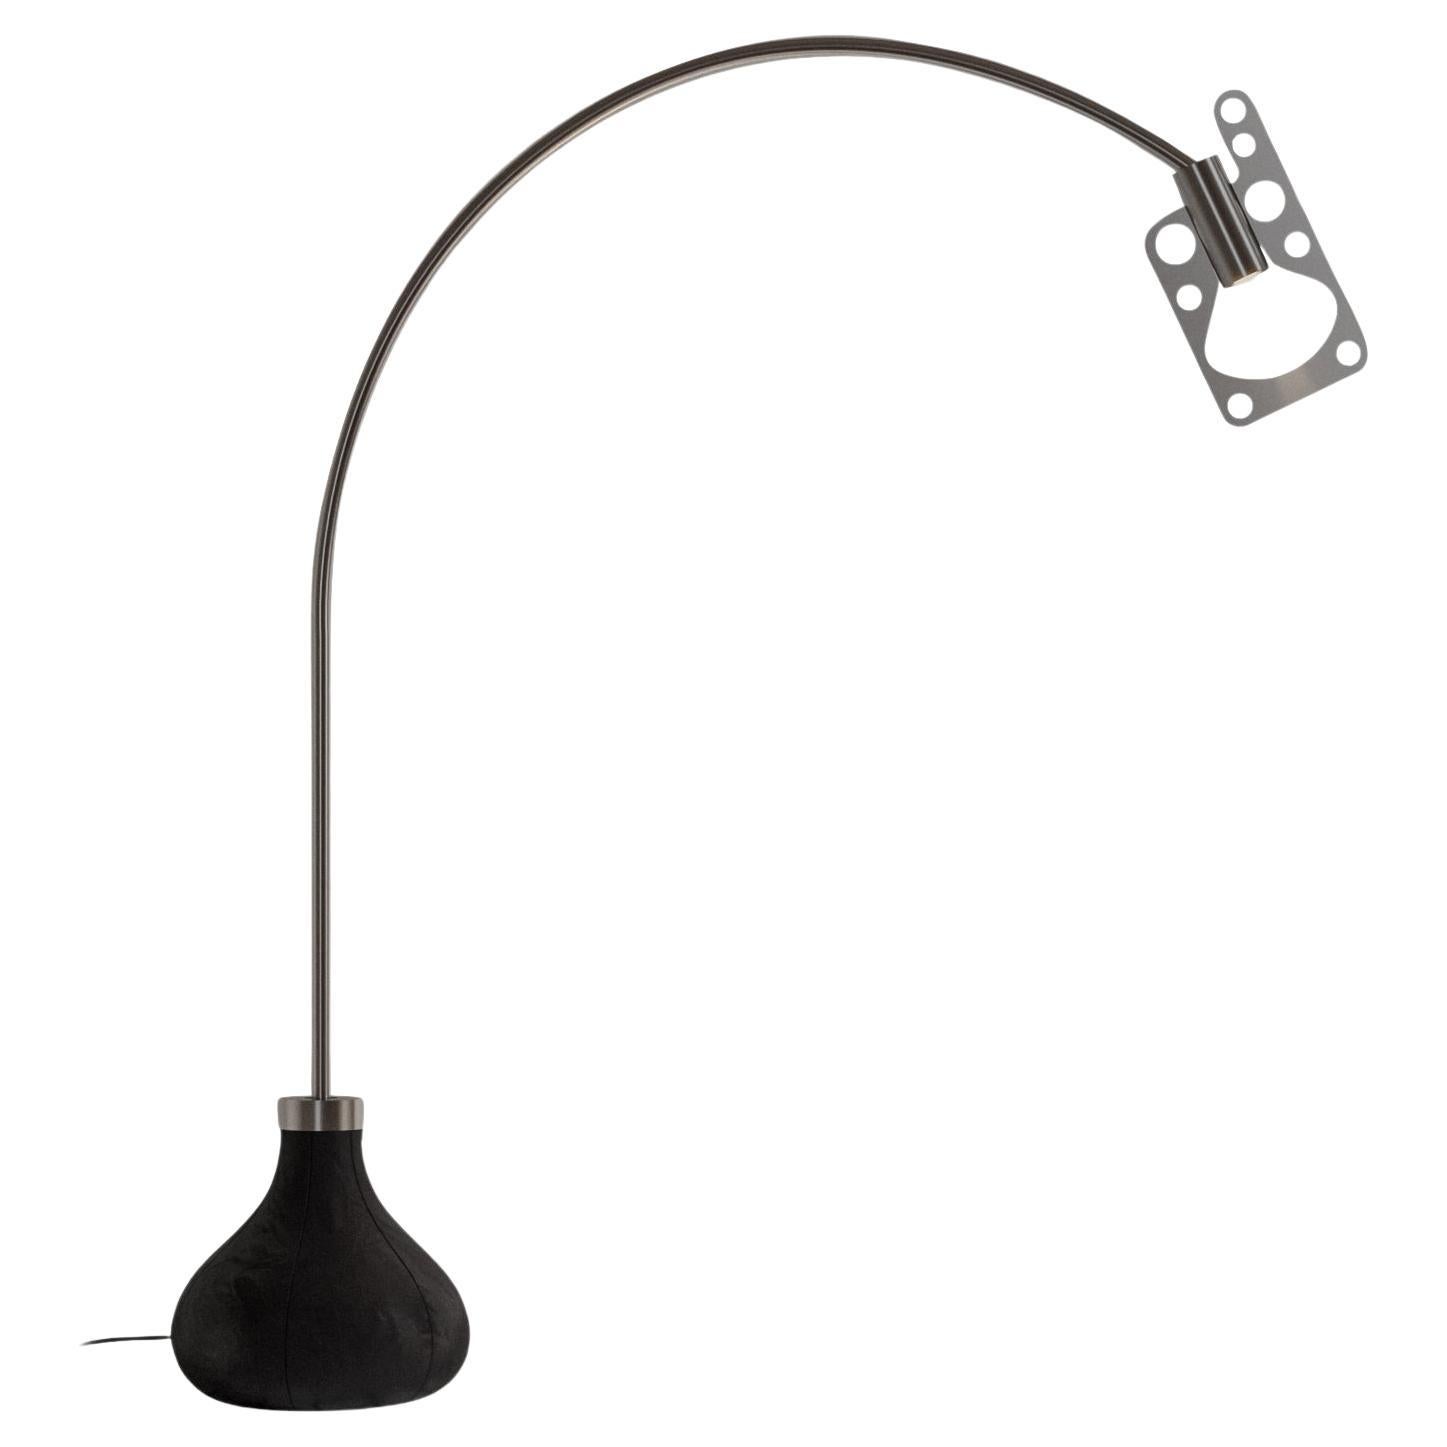 Axolight Bul-Bo Mini Table Lamp in Black Metal and Fabric